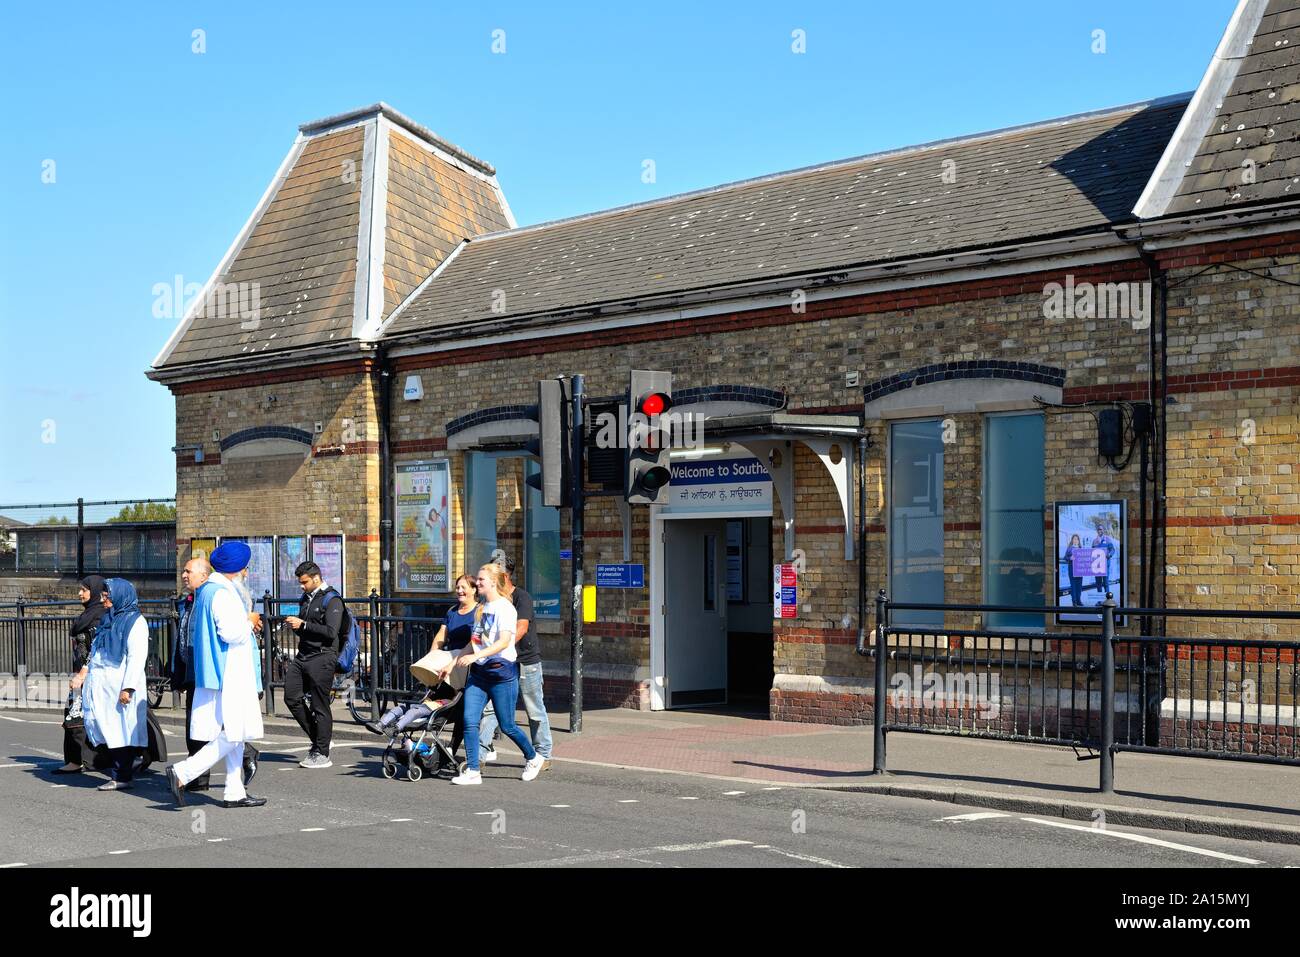 Extérieur de l'ancienne gare de Southall, South Street, Southall West London Angleterre Royaume-Uni Banque D'Images